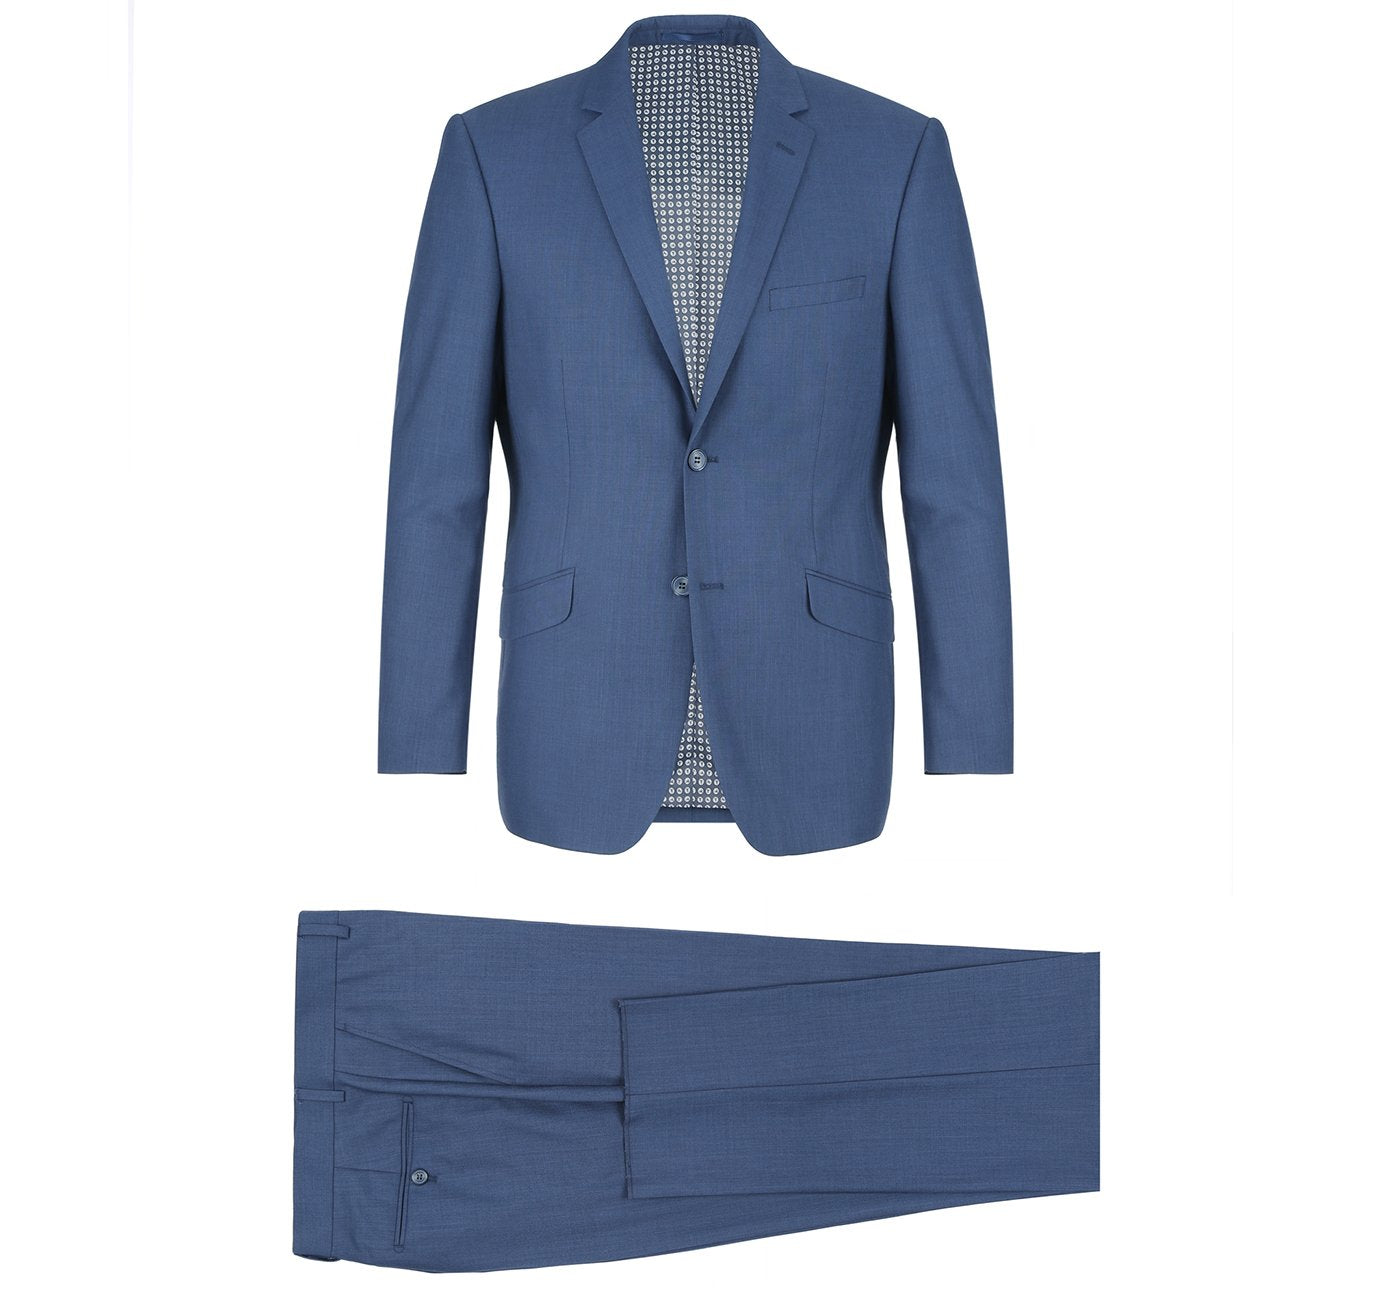 Men's Classic/Slim Fit Notch Lapel Navy 2-Piece Suit